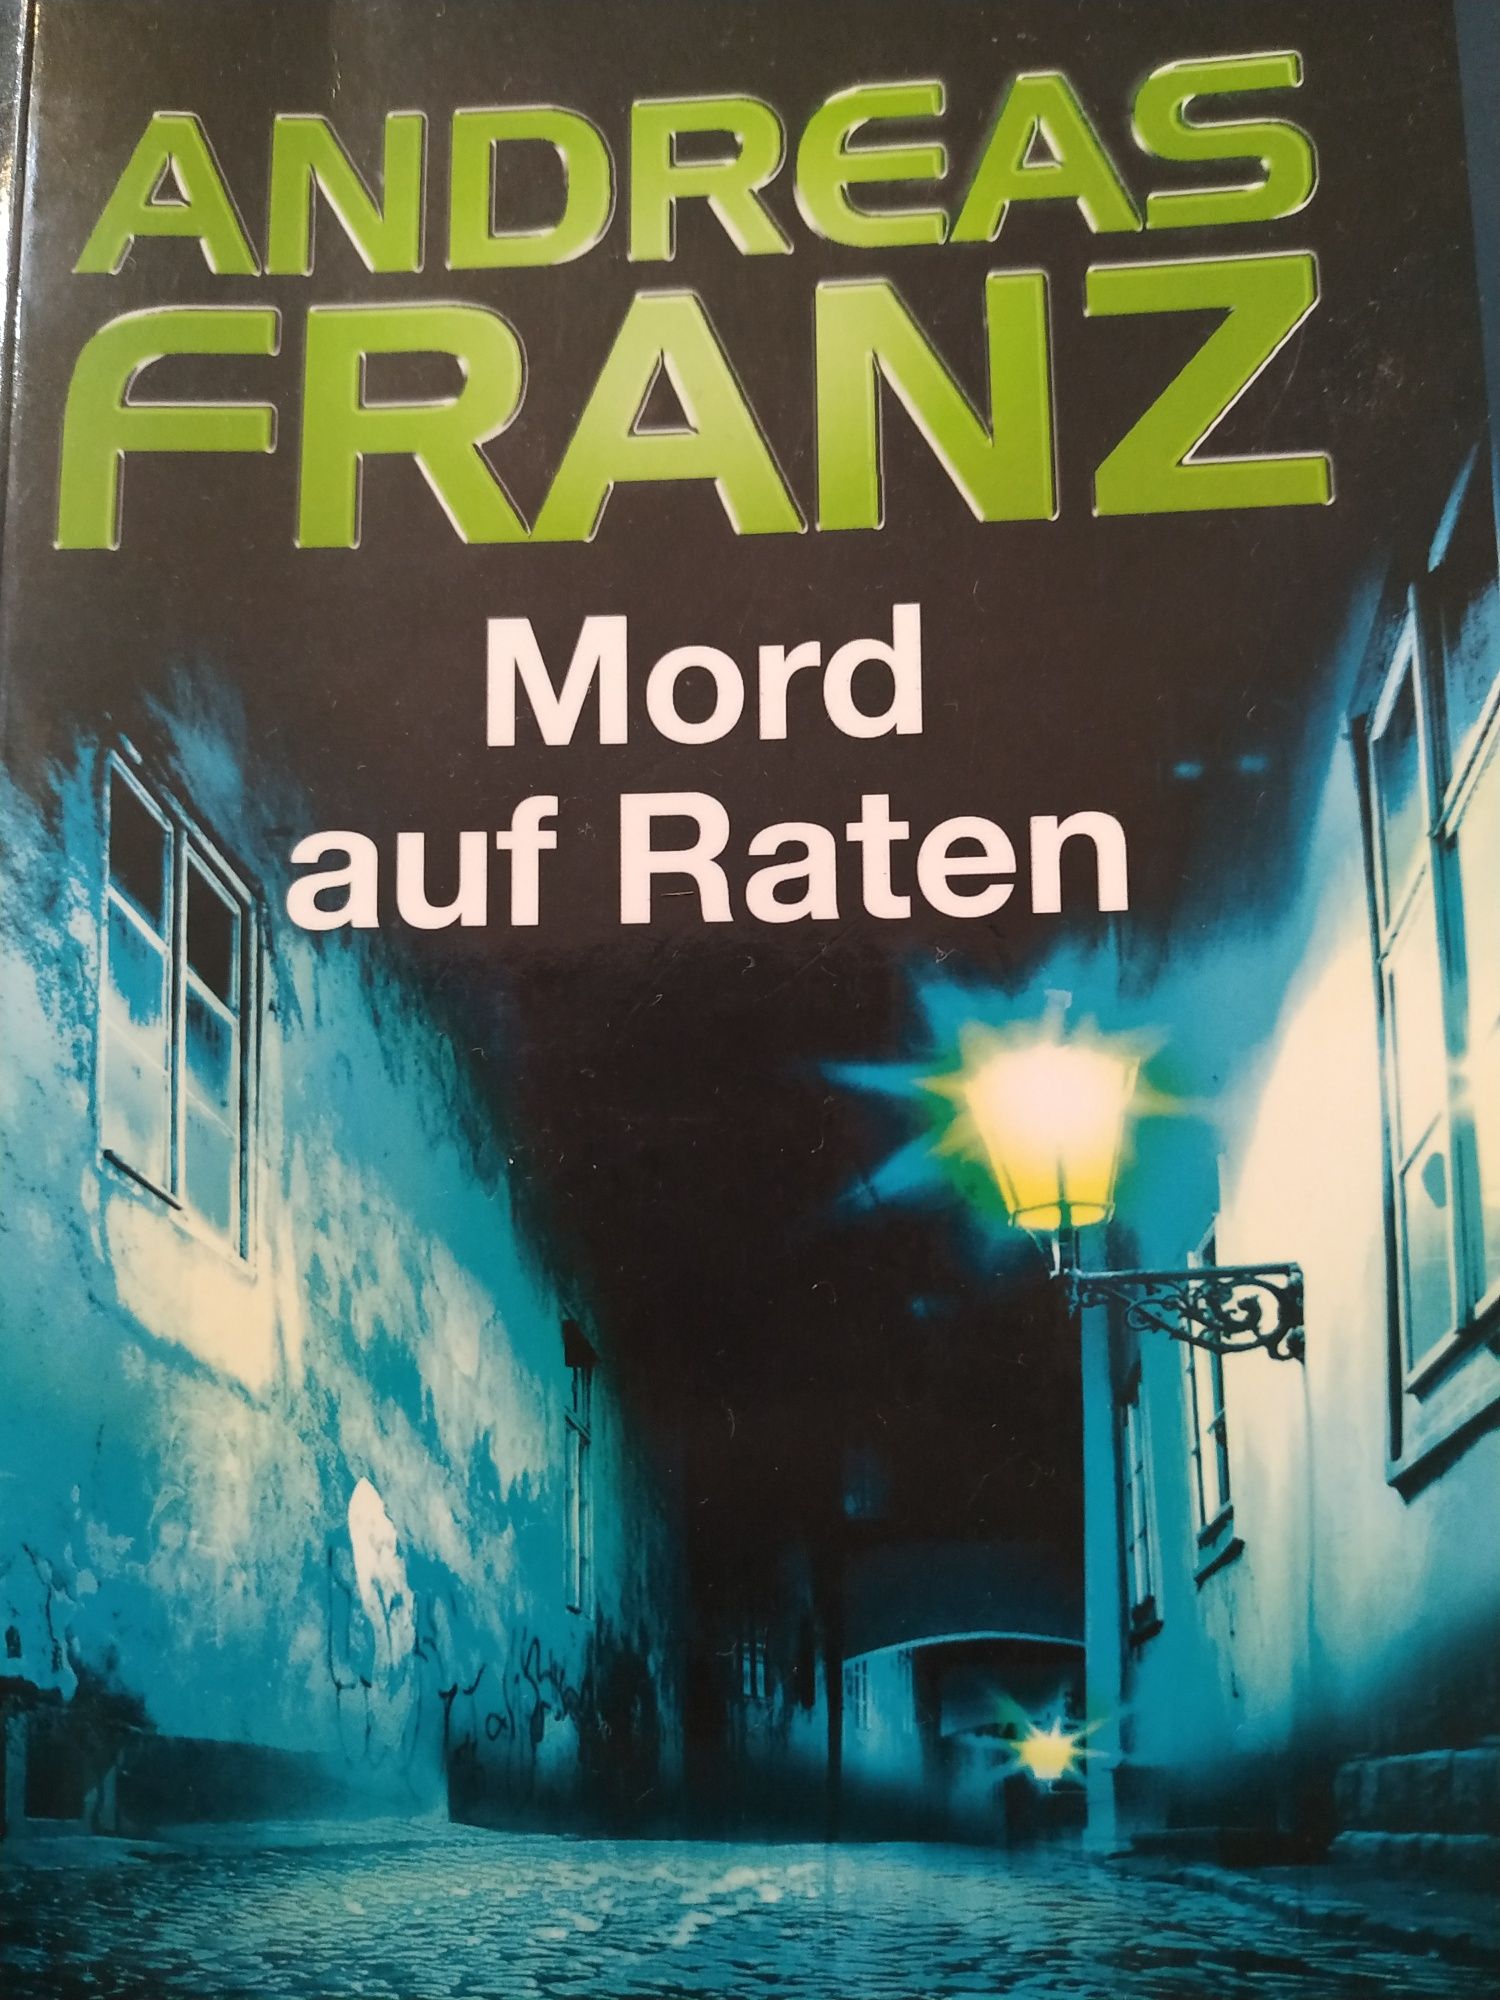 Livro Mord auf Raten (Andreas Franz)